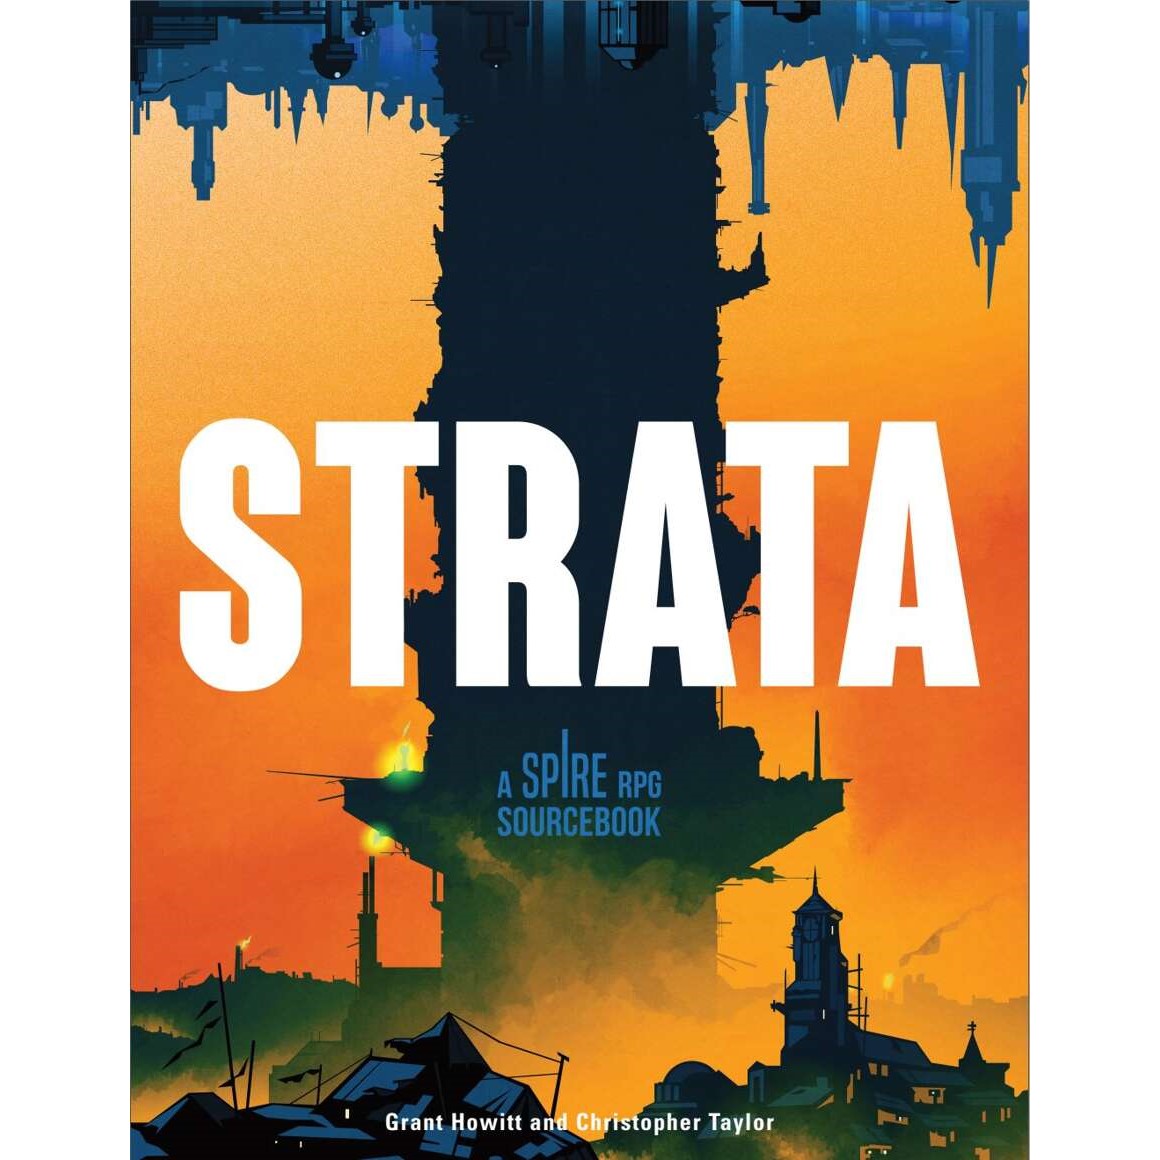 Strata: A Spire RPG Sourcebook